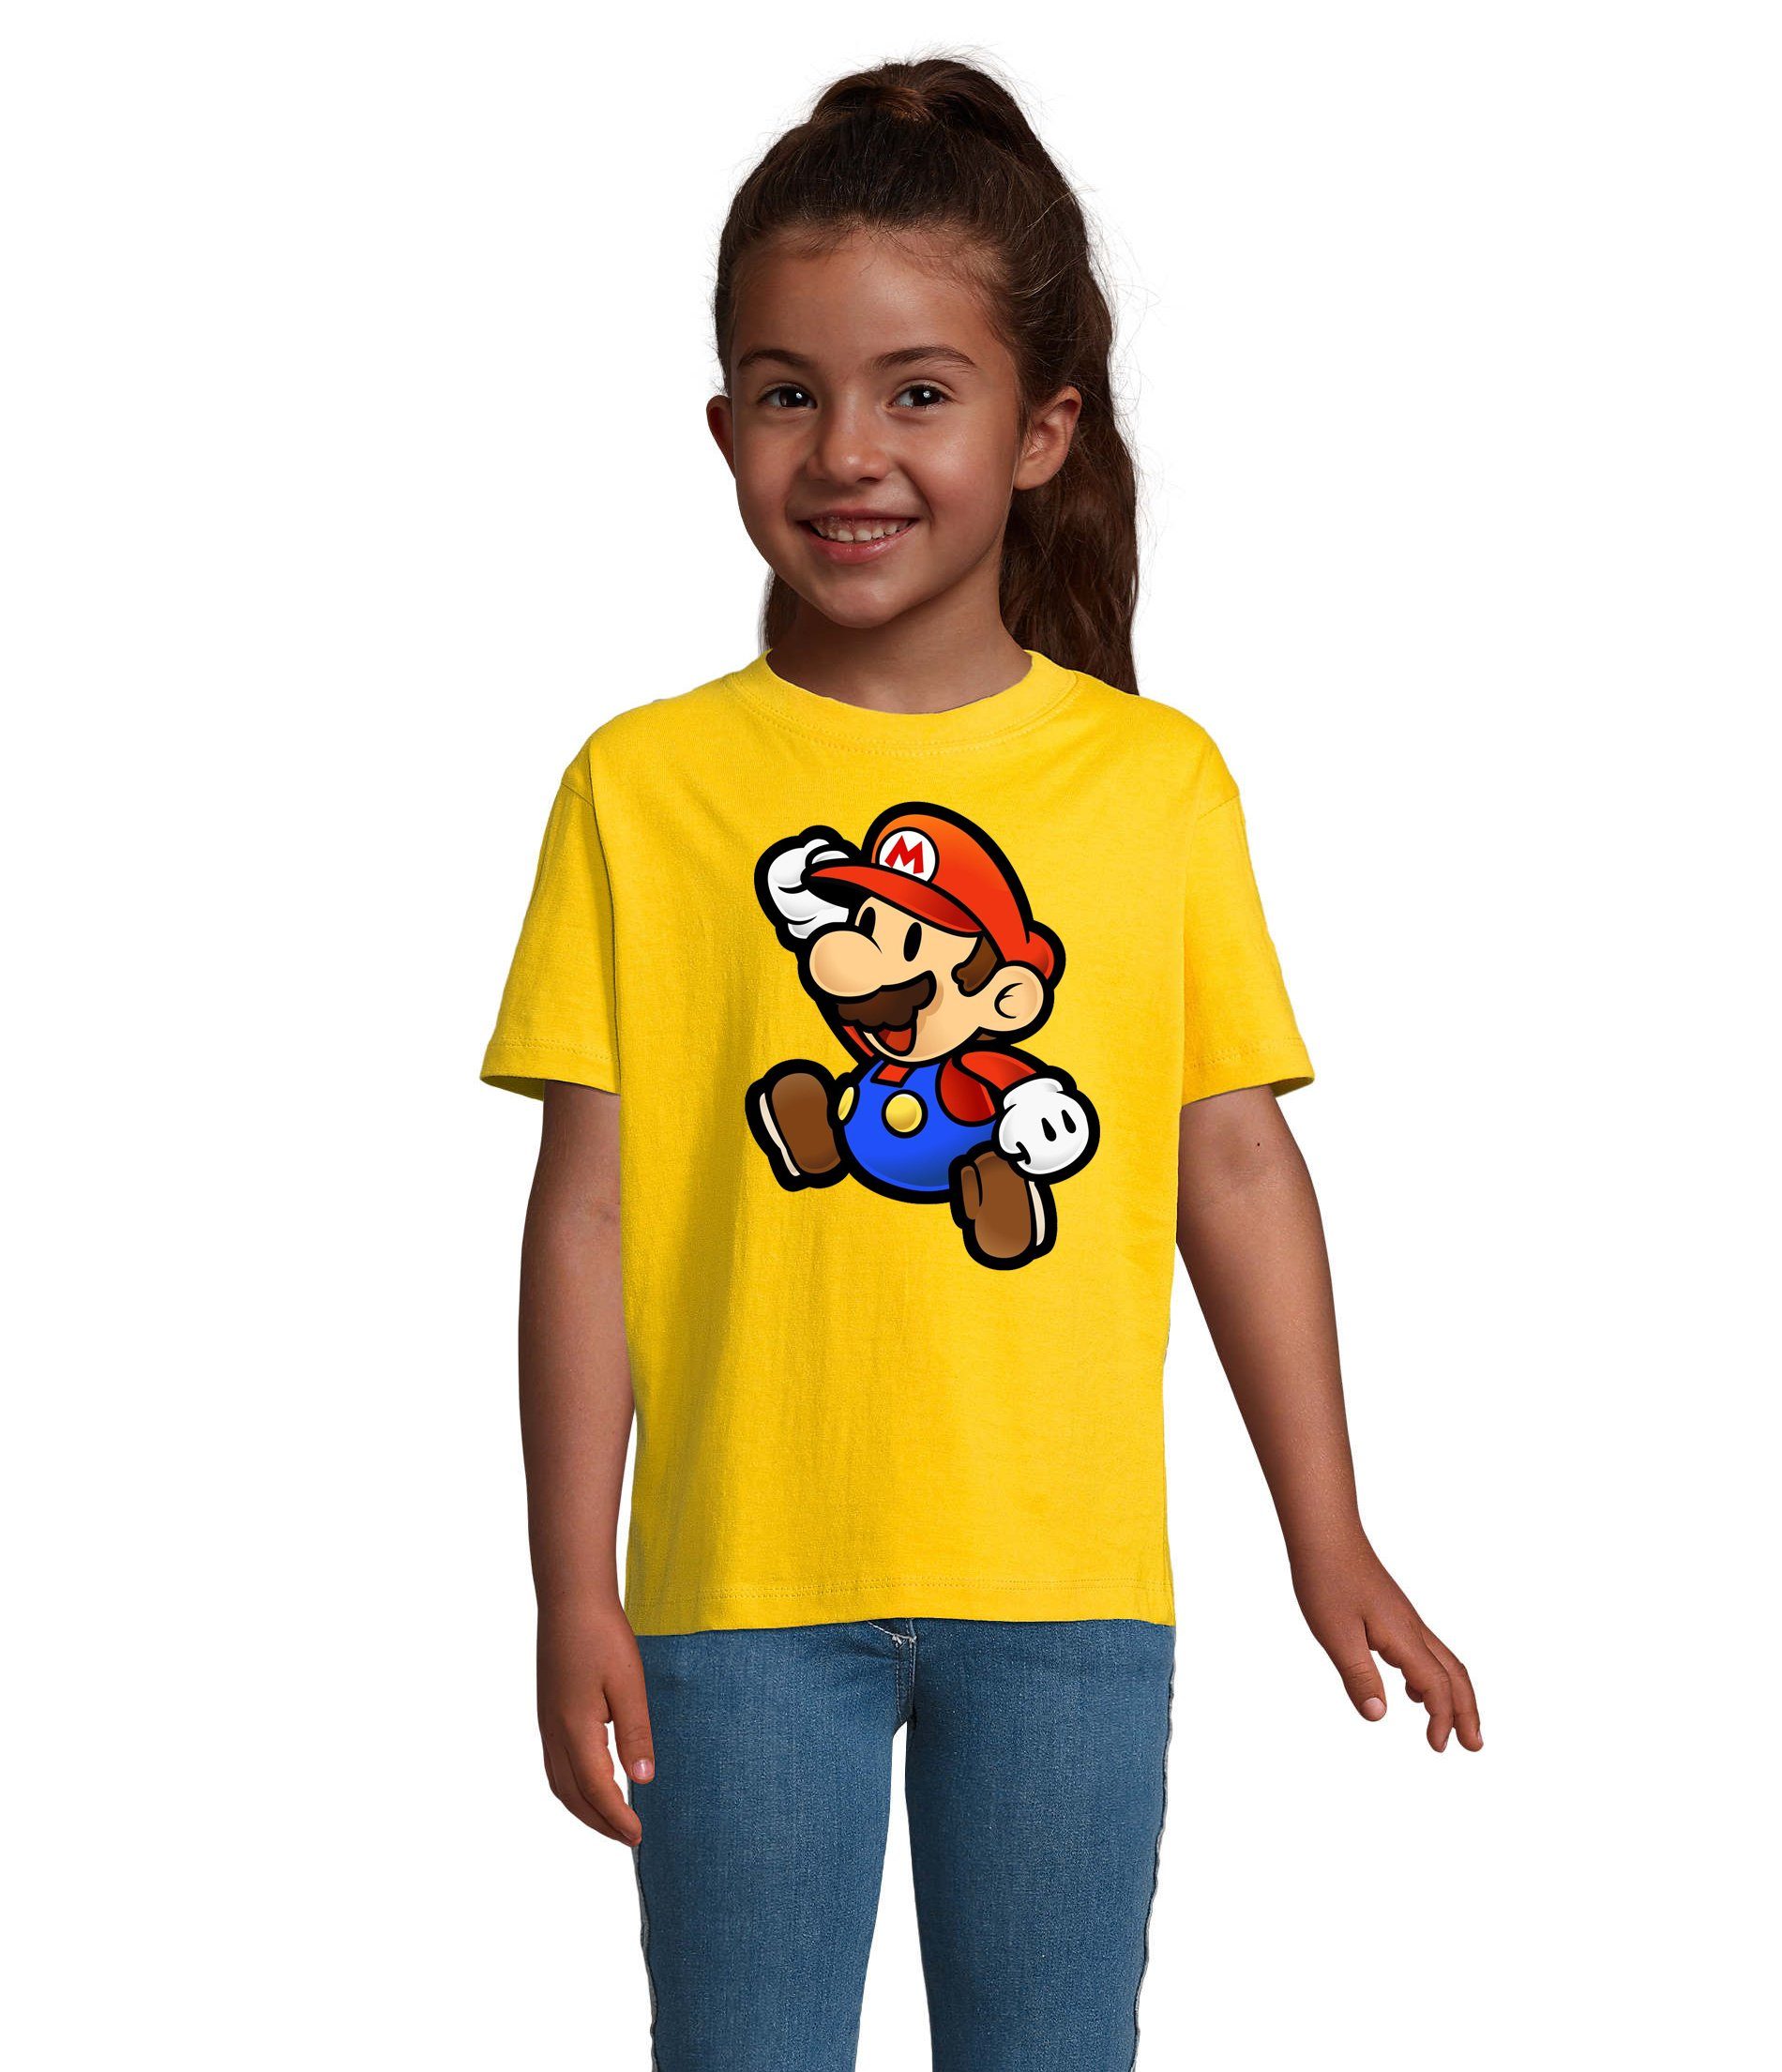 Blondie & Brownie T-Shirt Kinder Jungen & Mädchen Mario Nintendo Gaming Luigi Yoshi Super in vielen Farben Gelb